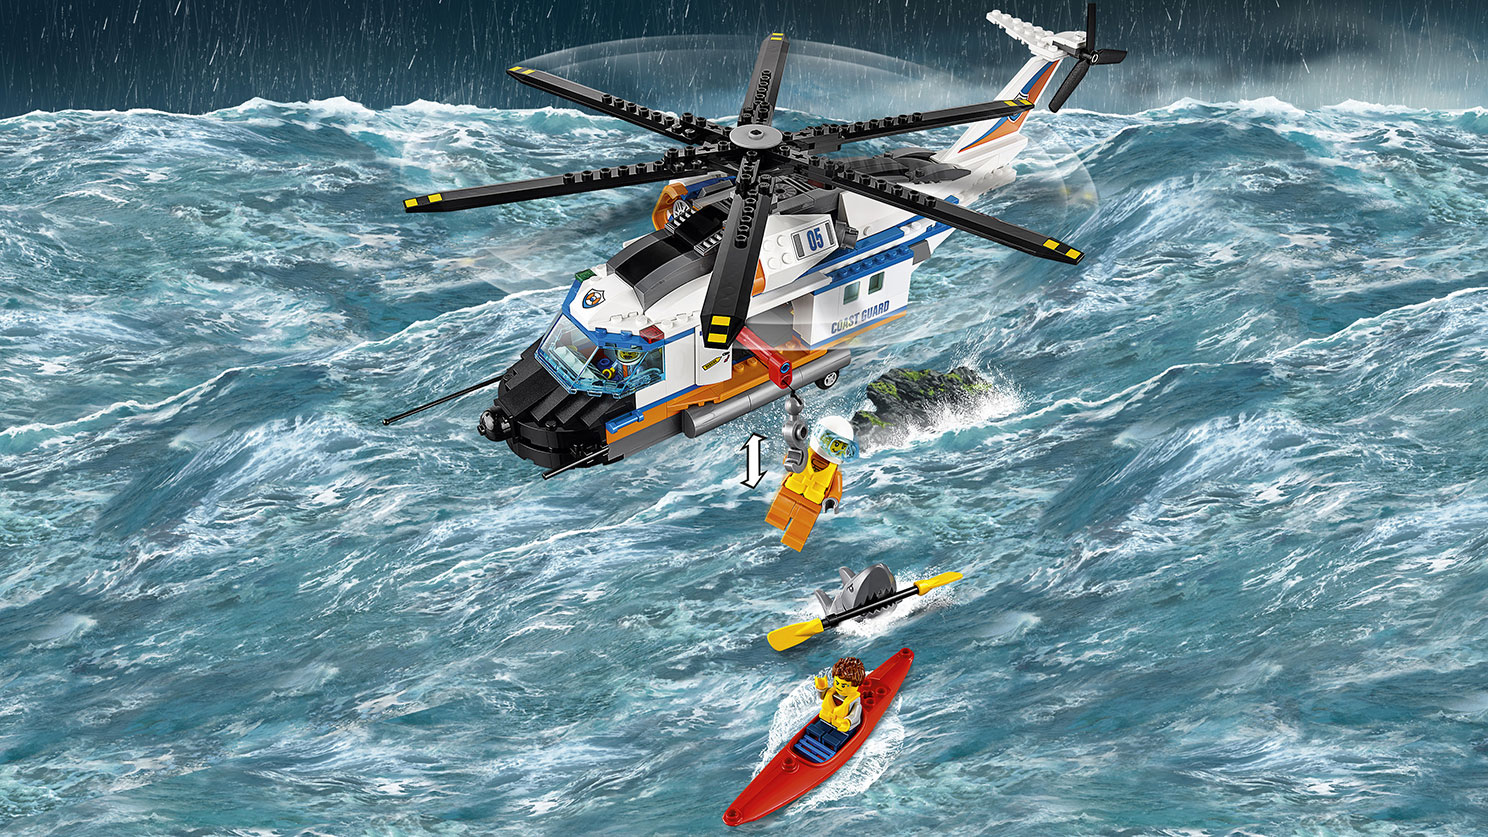 海上レスキューヘリコプター 60166 - レゴ®シティ セット - LEGO.comキッズ